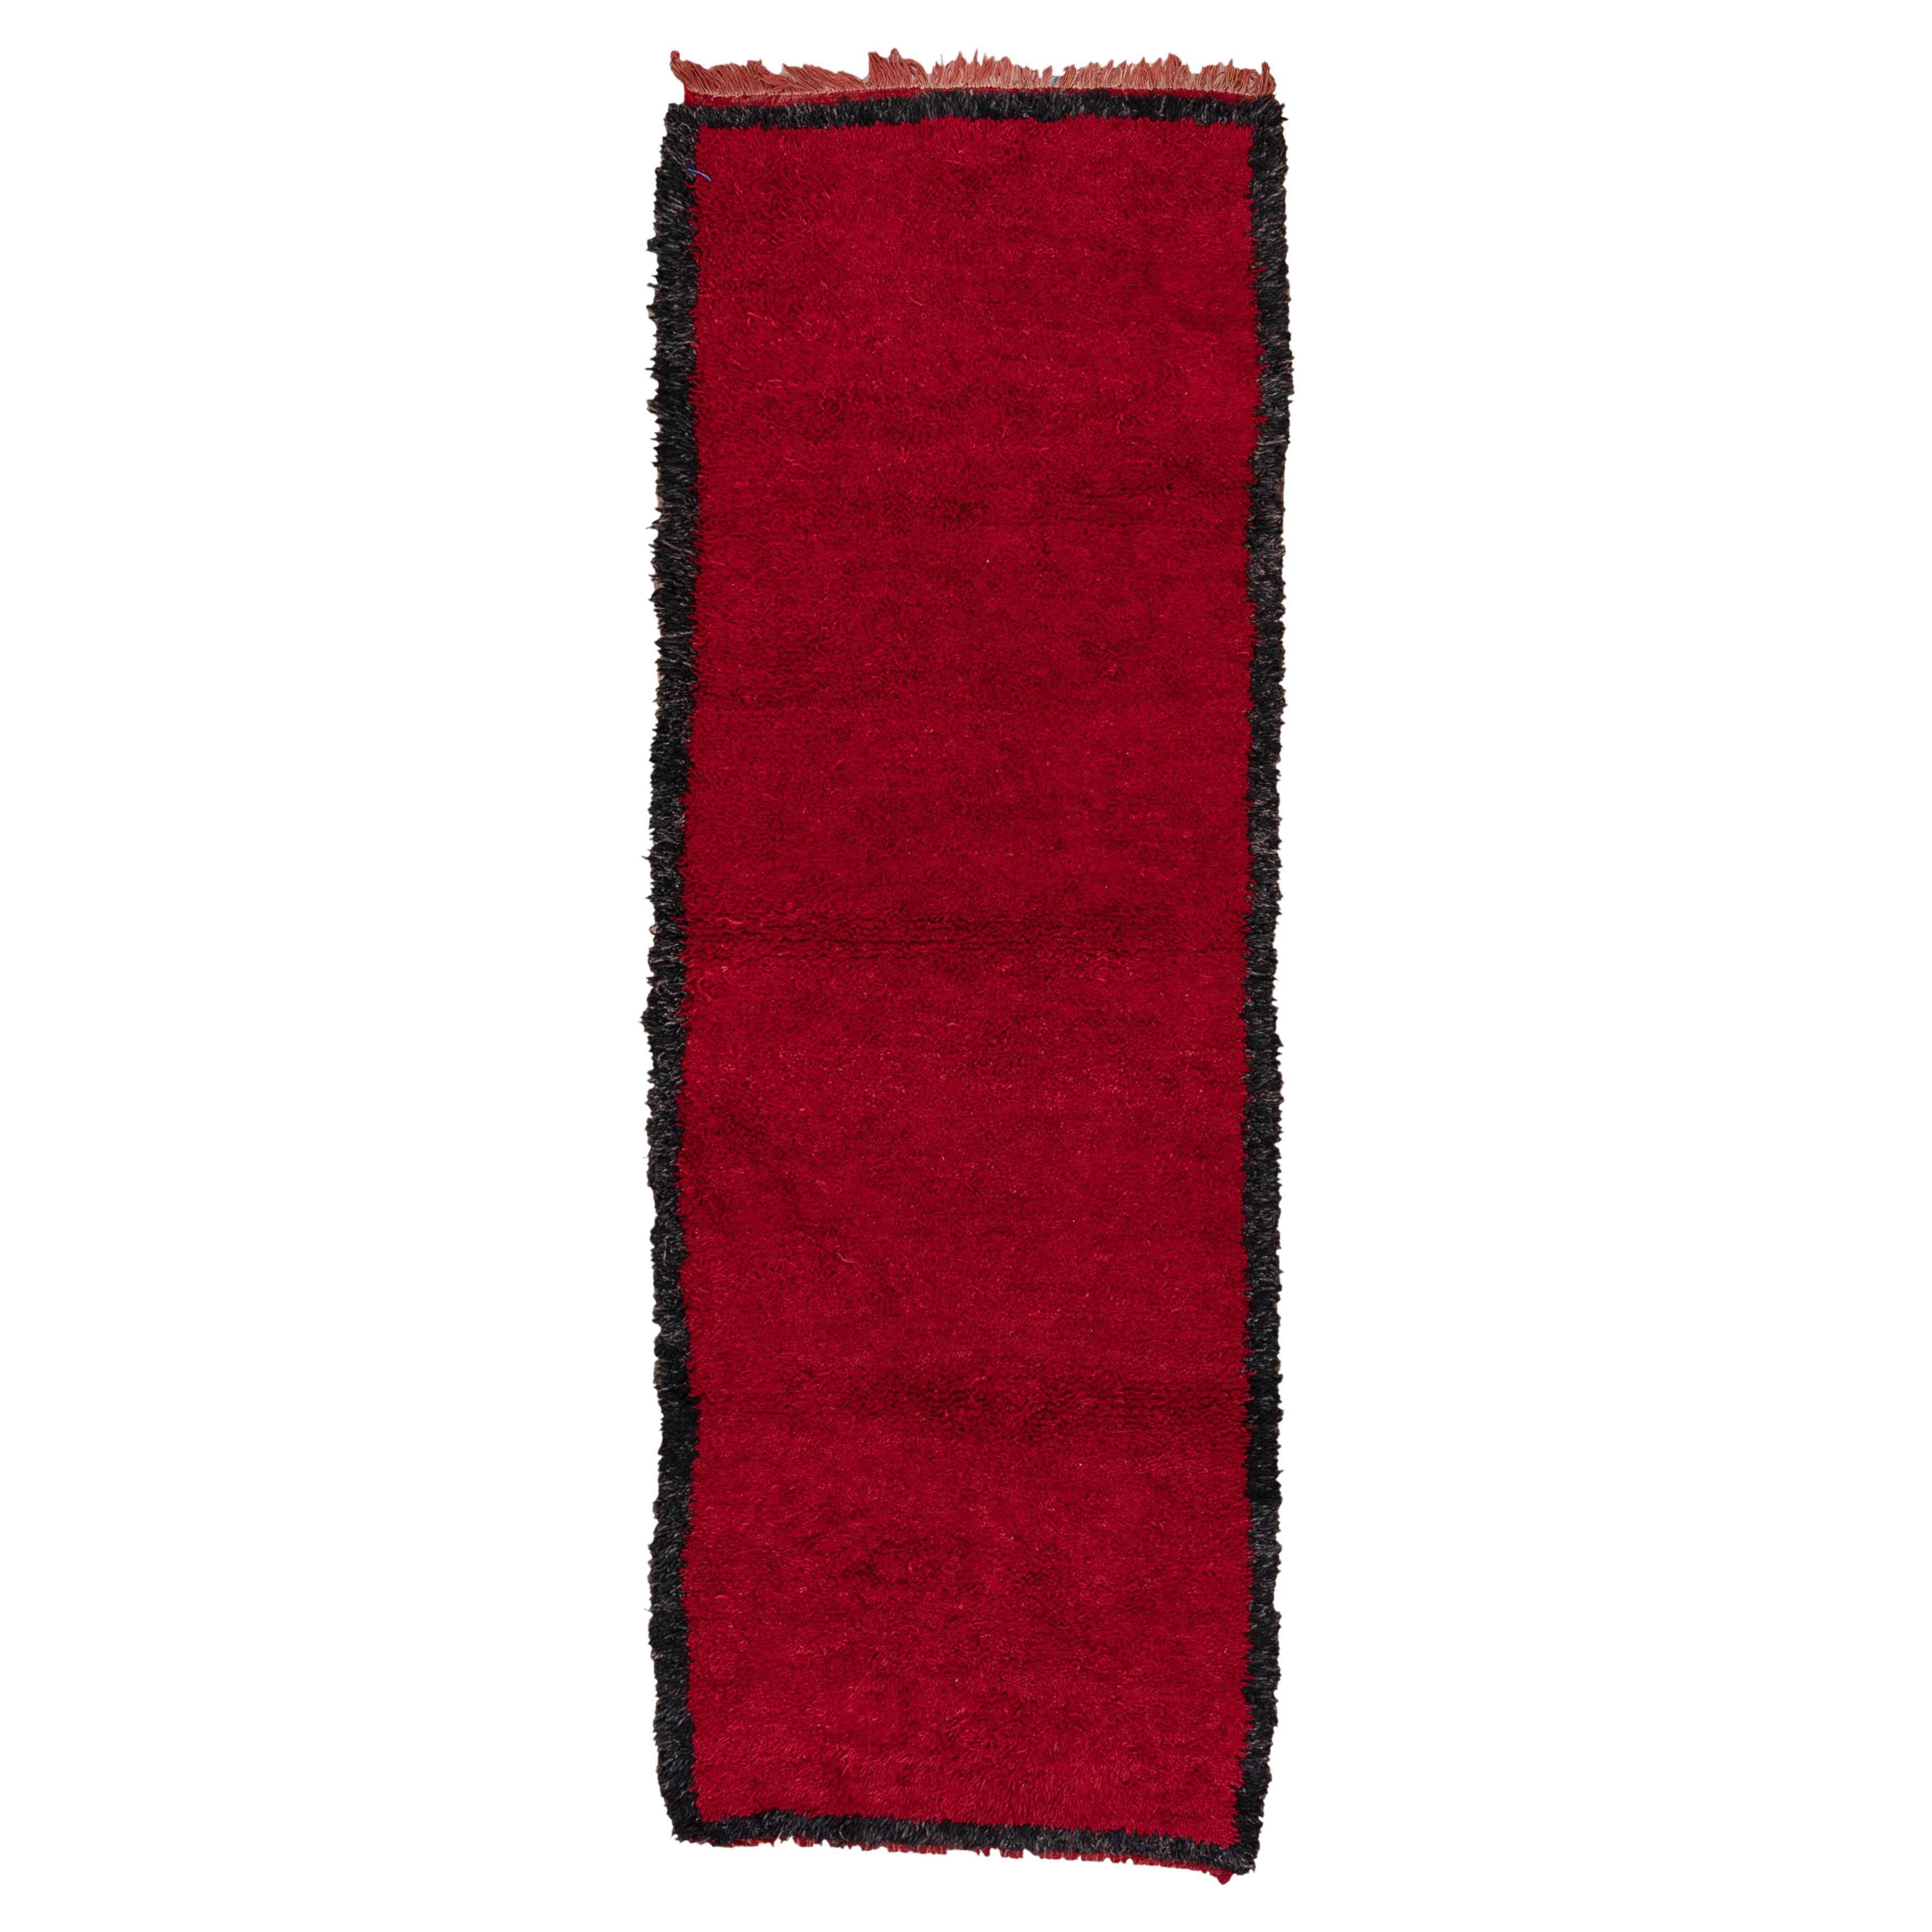 Marocain rouge avec bordure noire - Chemin de table en vente